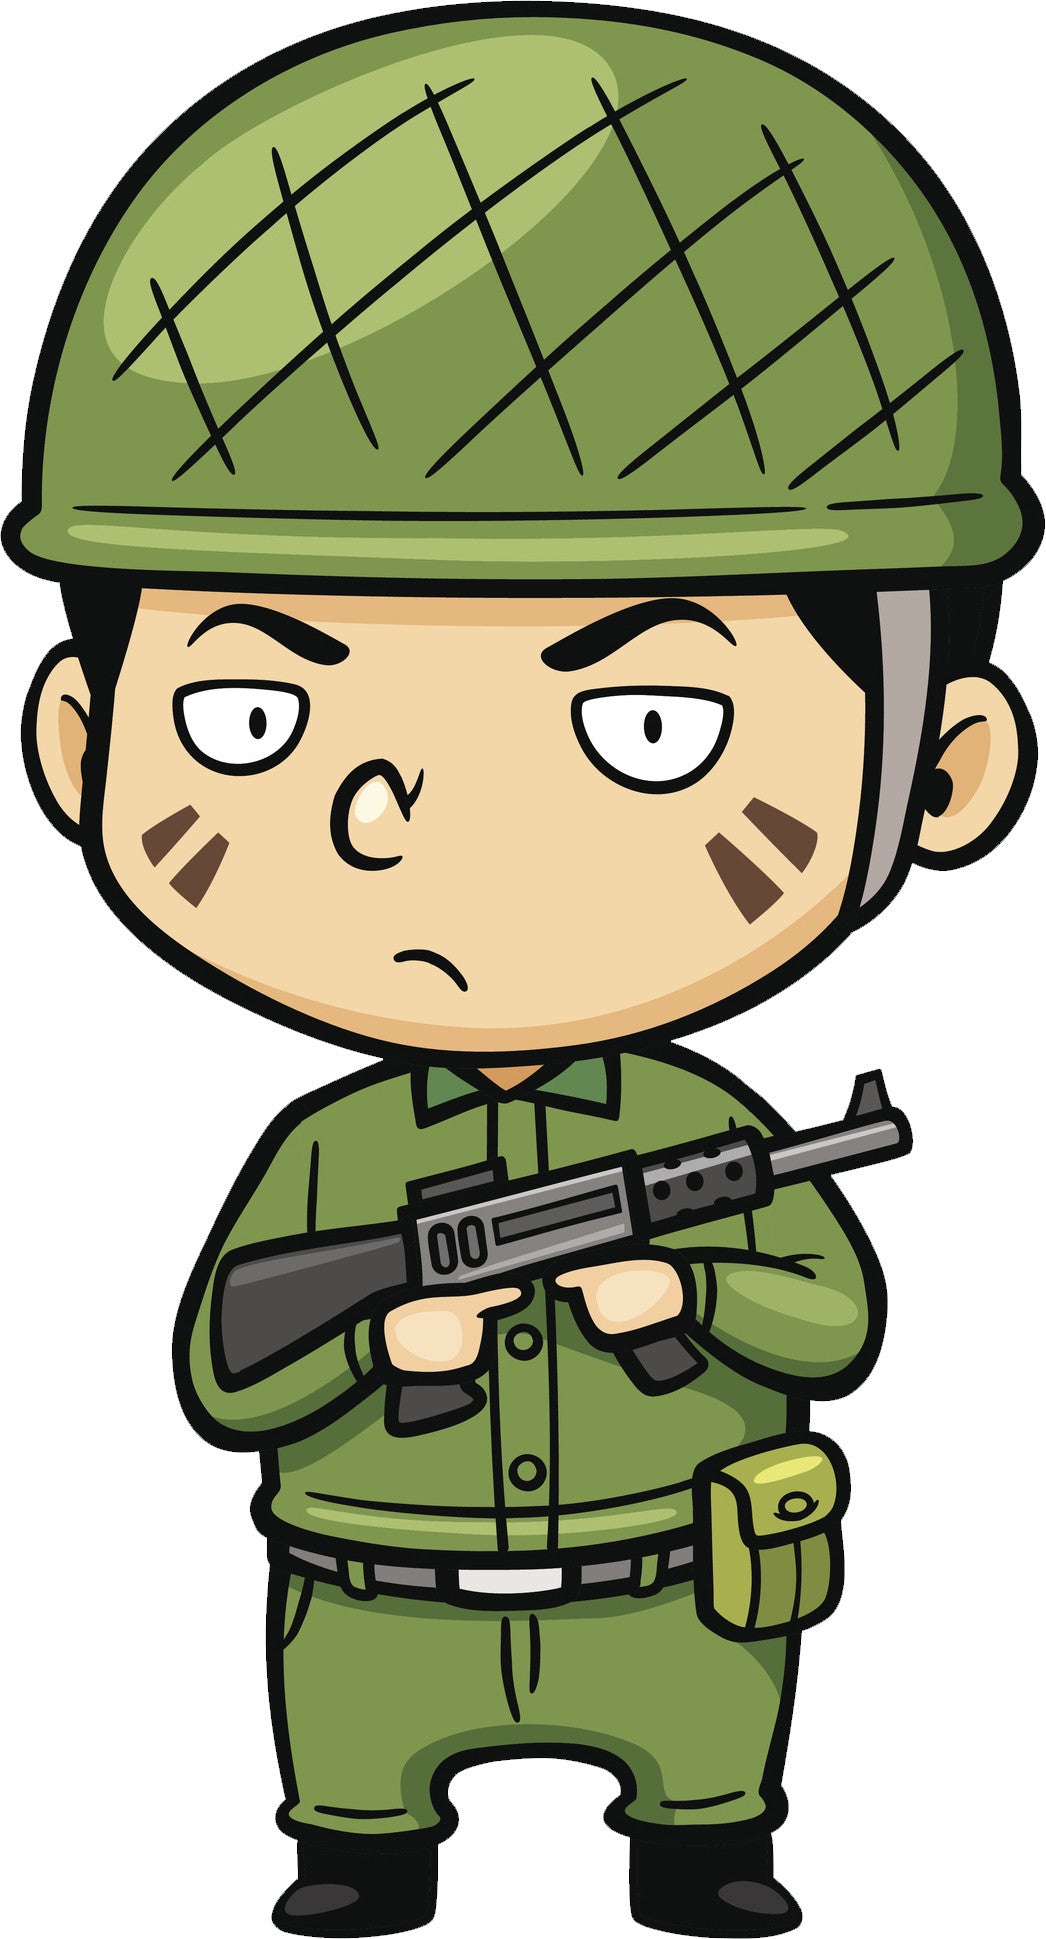 Adorable Asian Kawaii Green Soldier Cartoon Vinyl Decal Sticker